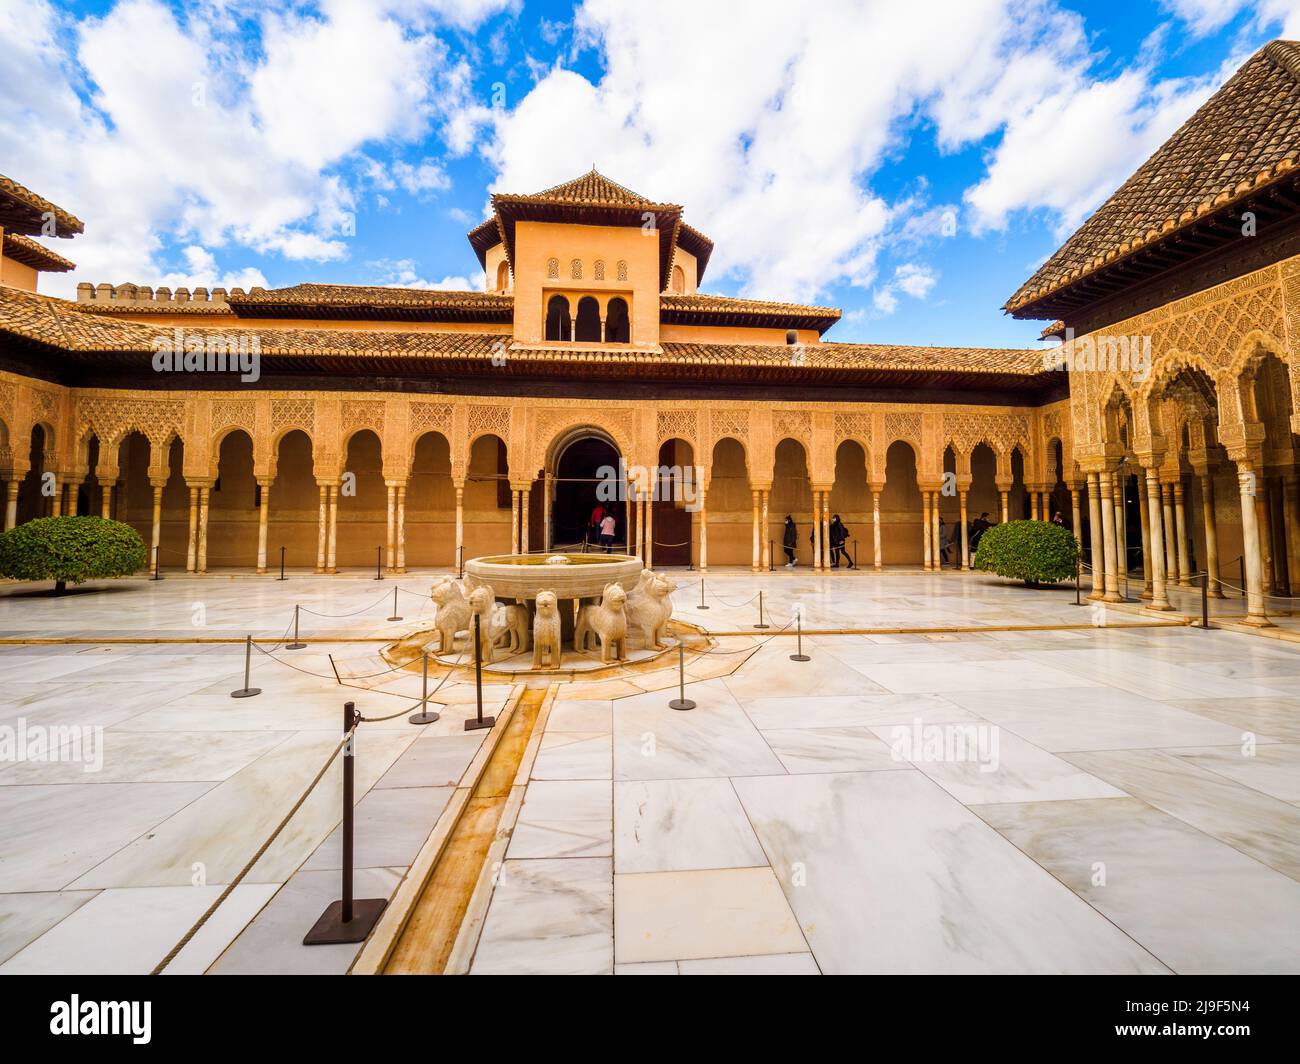 Cour des Lions du complexe des palais royaux de Nasrid - complexe de l'Alhambra - Grenade, Espagne Banque D'Images